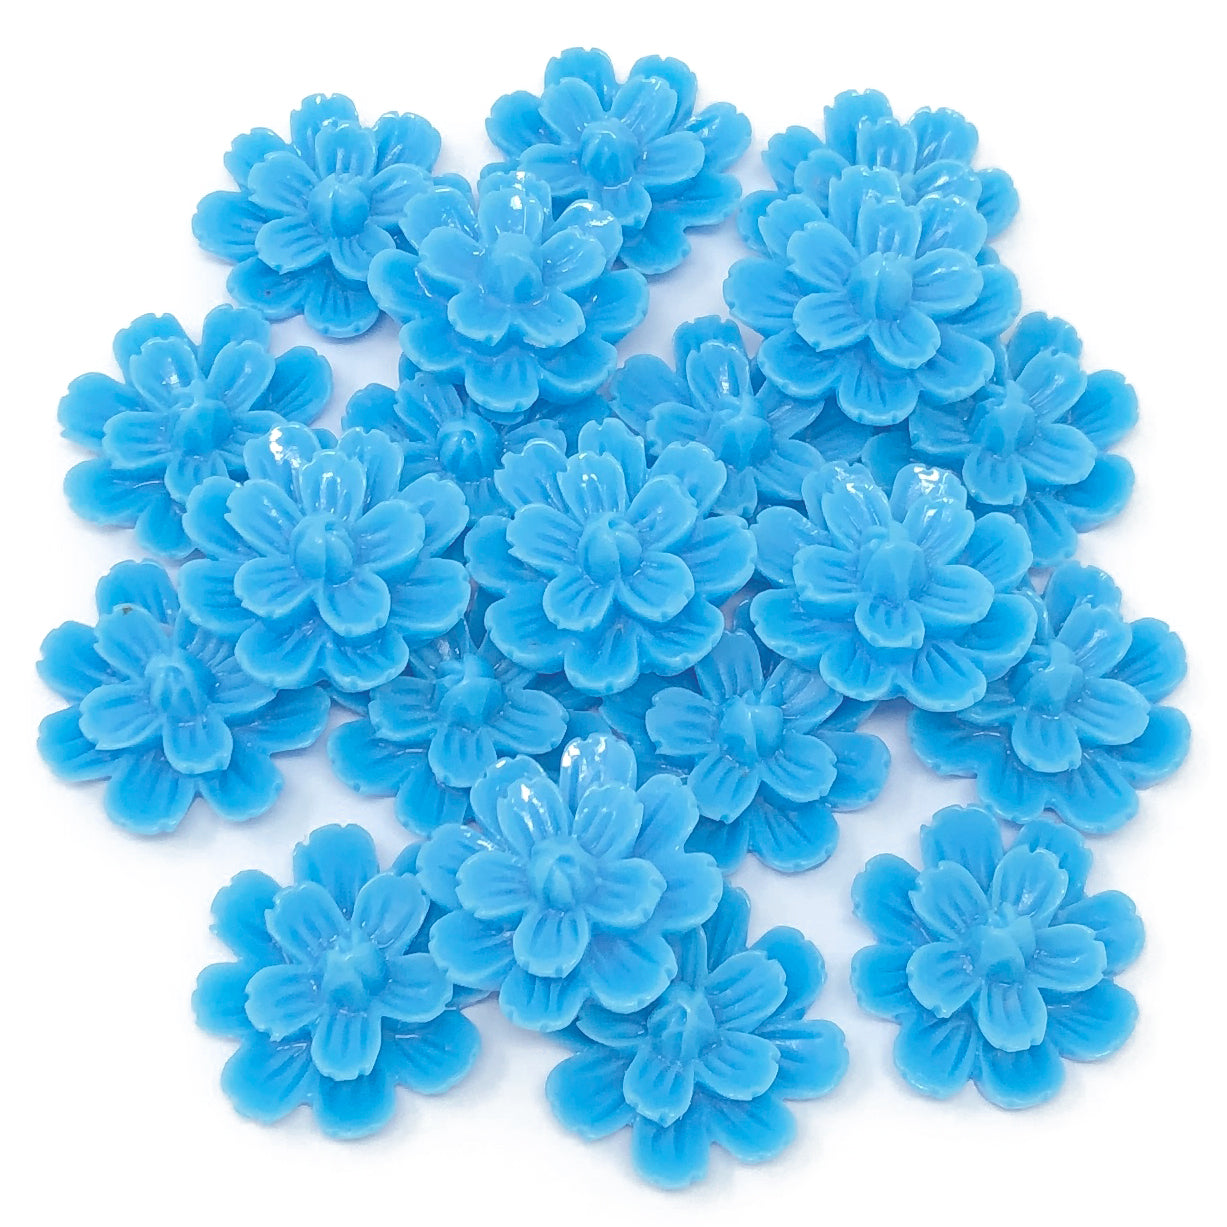 Blue 20mm Resin Flower Flatbacks - Pack of 20